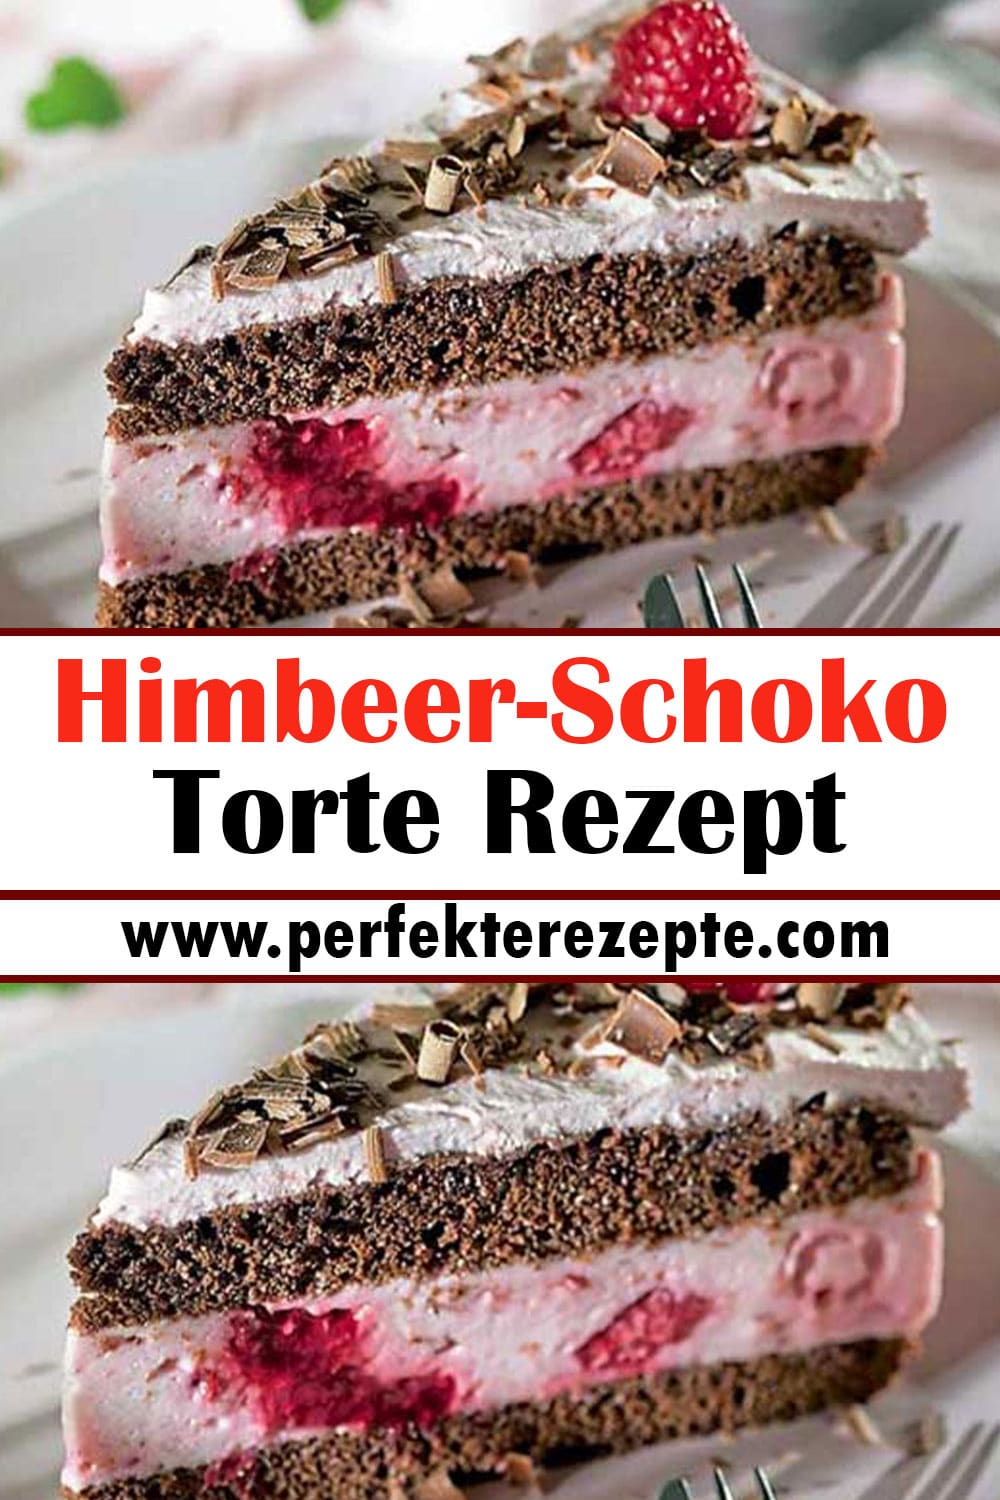 Himbeer-Schoko-Torte Rezept